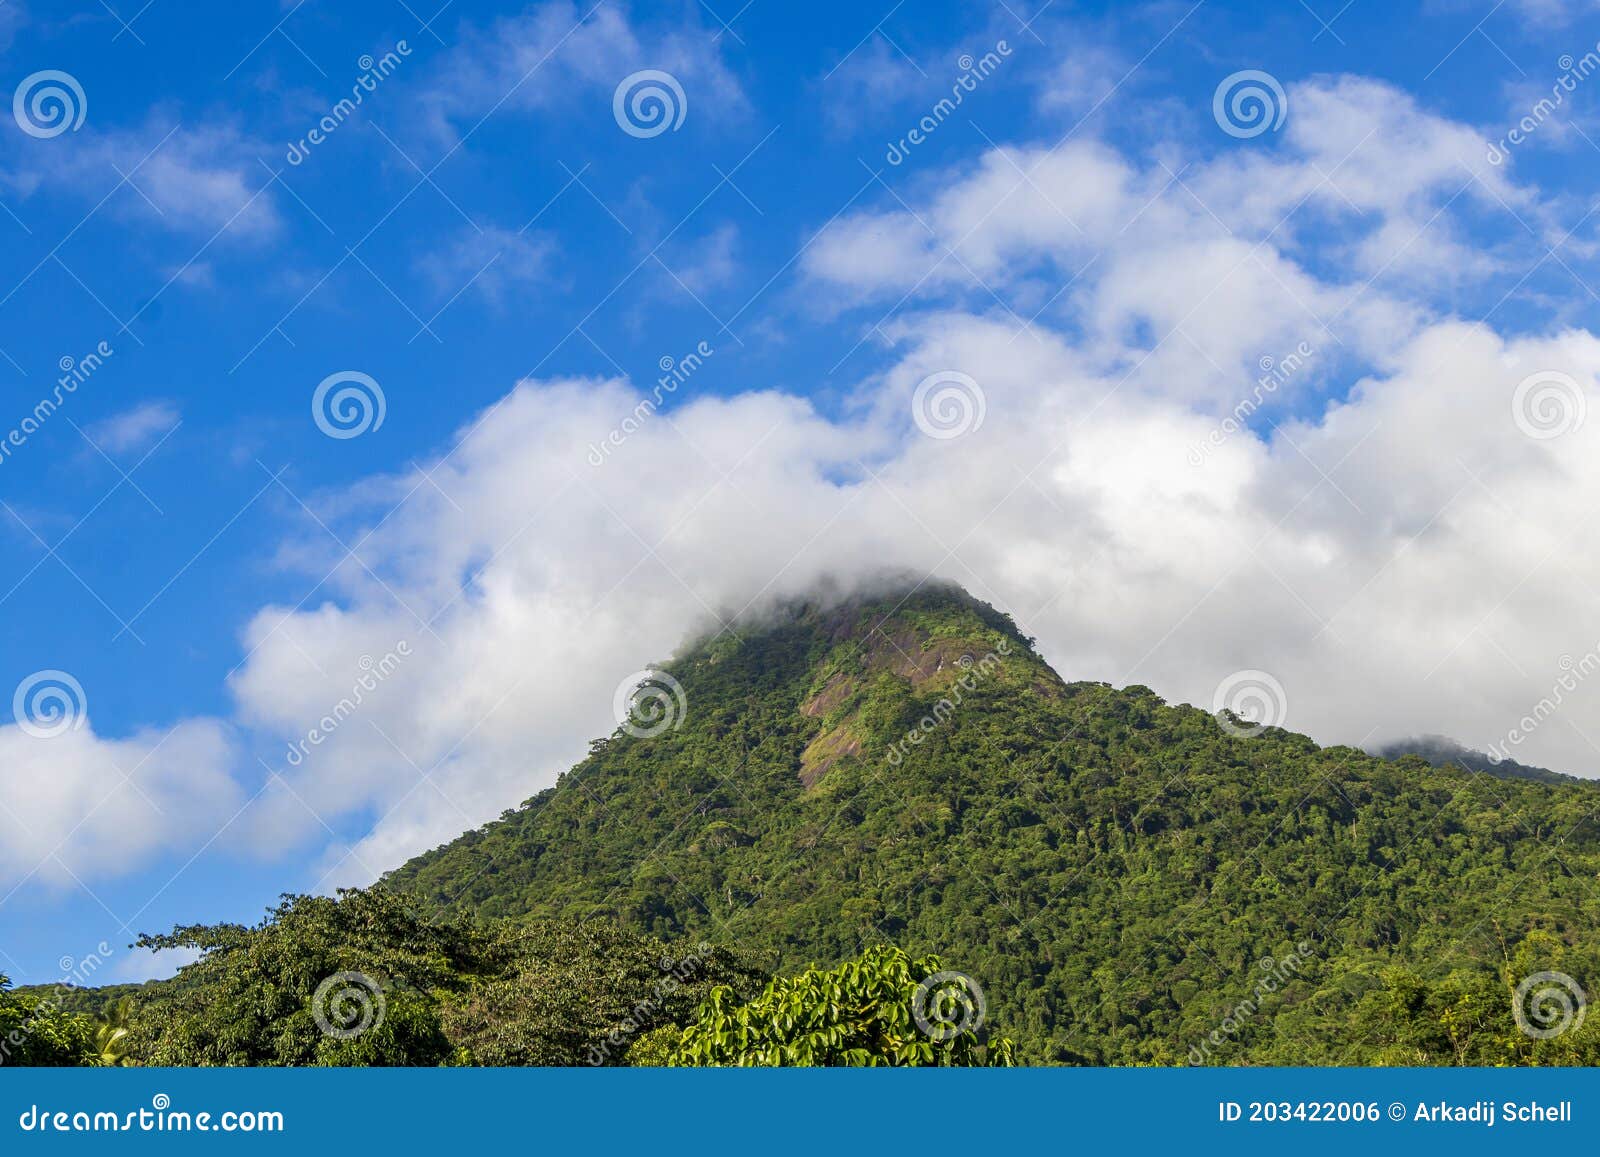 abraÃÂ£o mountain pico do papagaio with clouds. ilha grande brazil